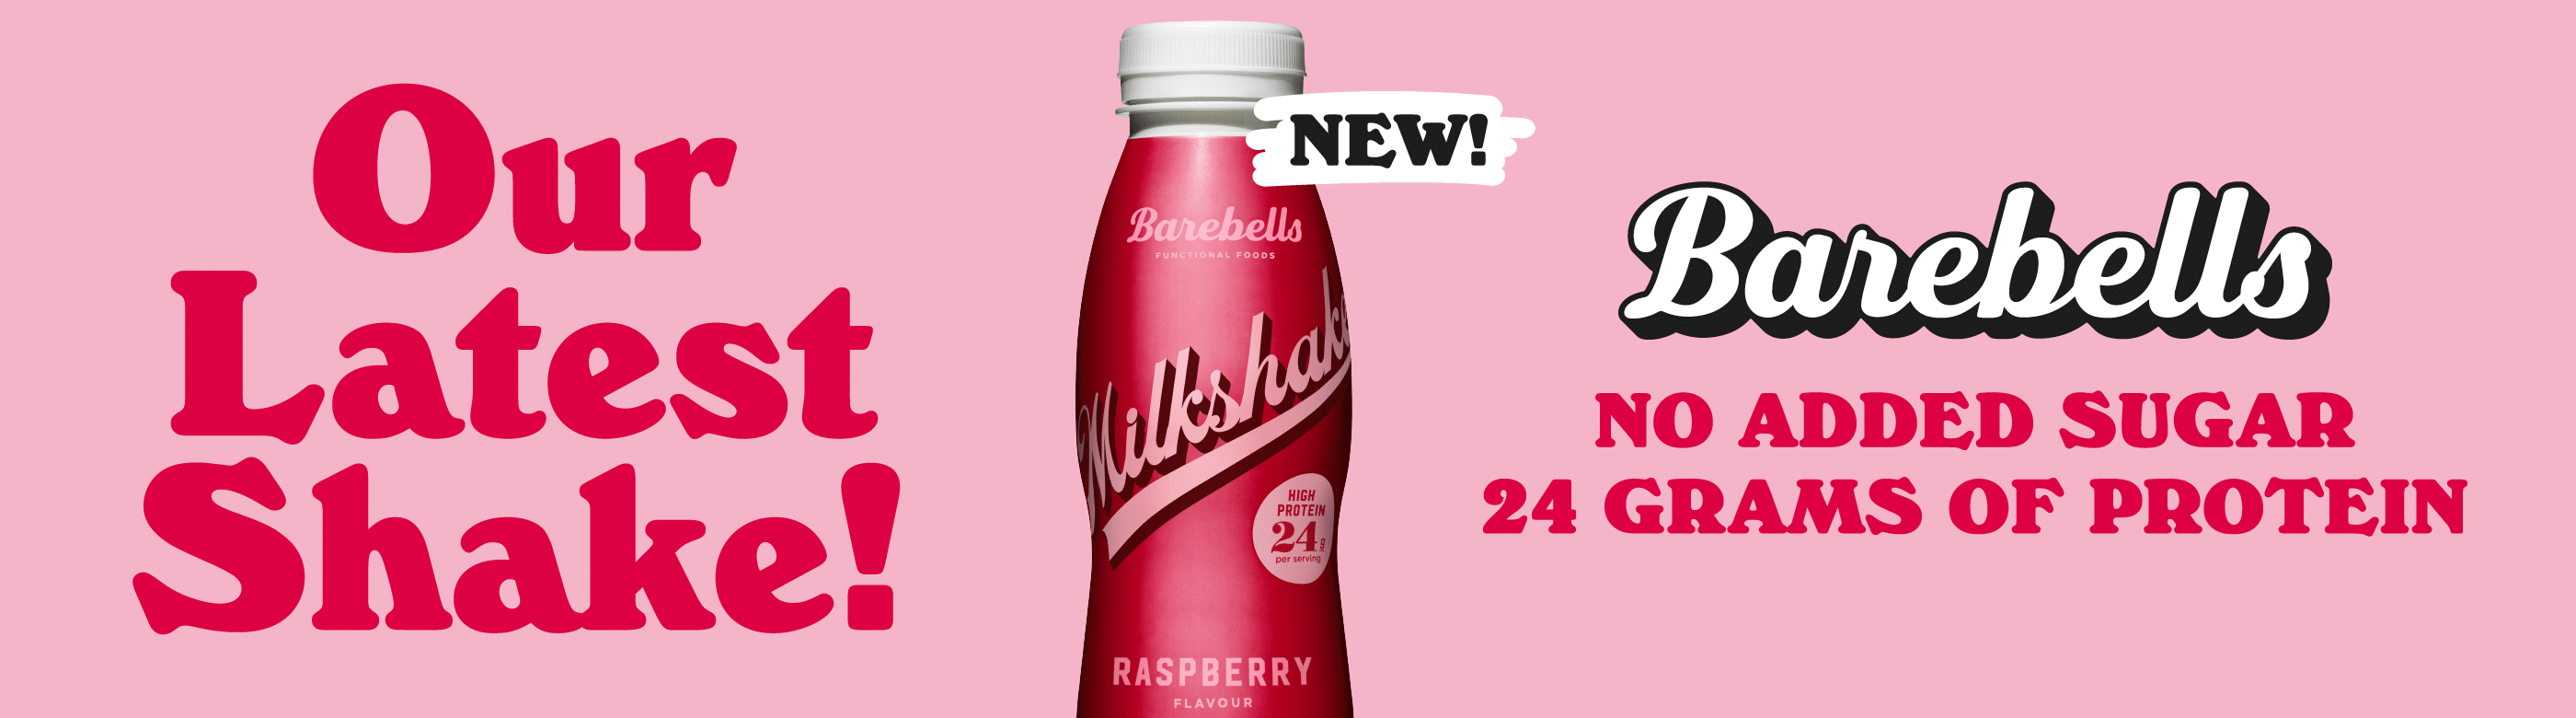 barebells milkshake raspberry new